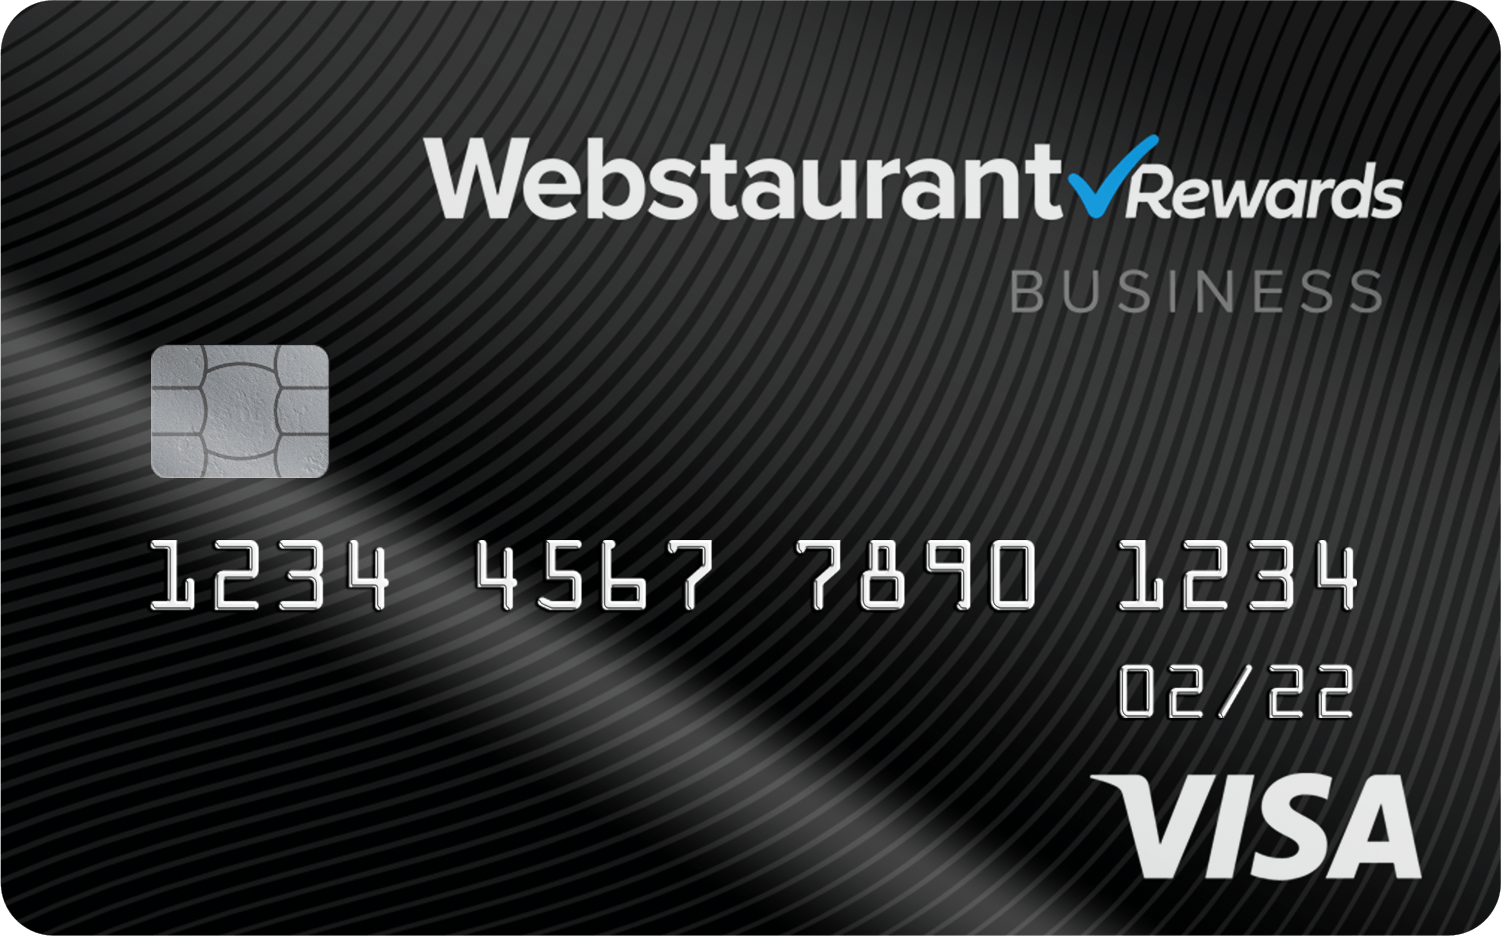 Webstaurant Rewards Visa Card